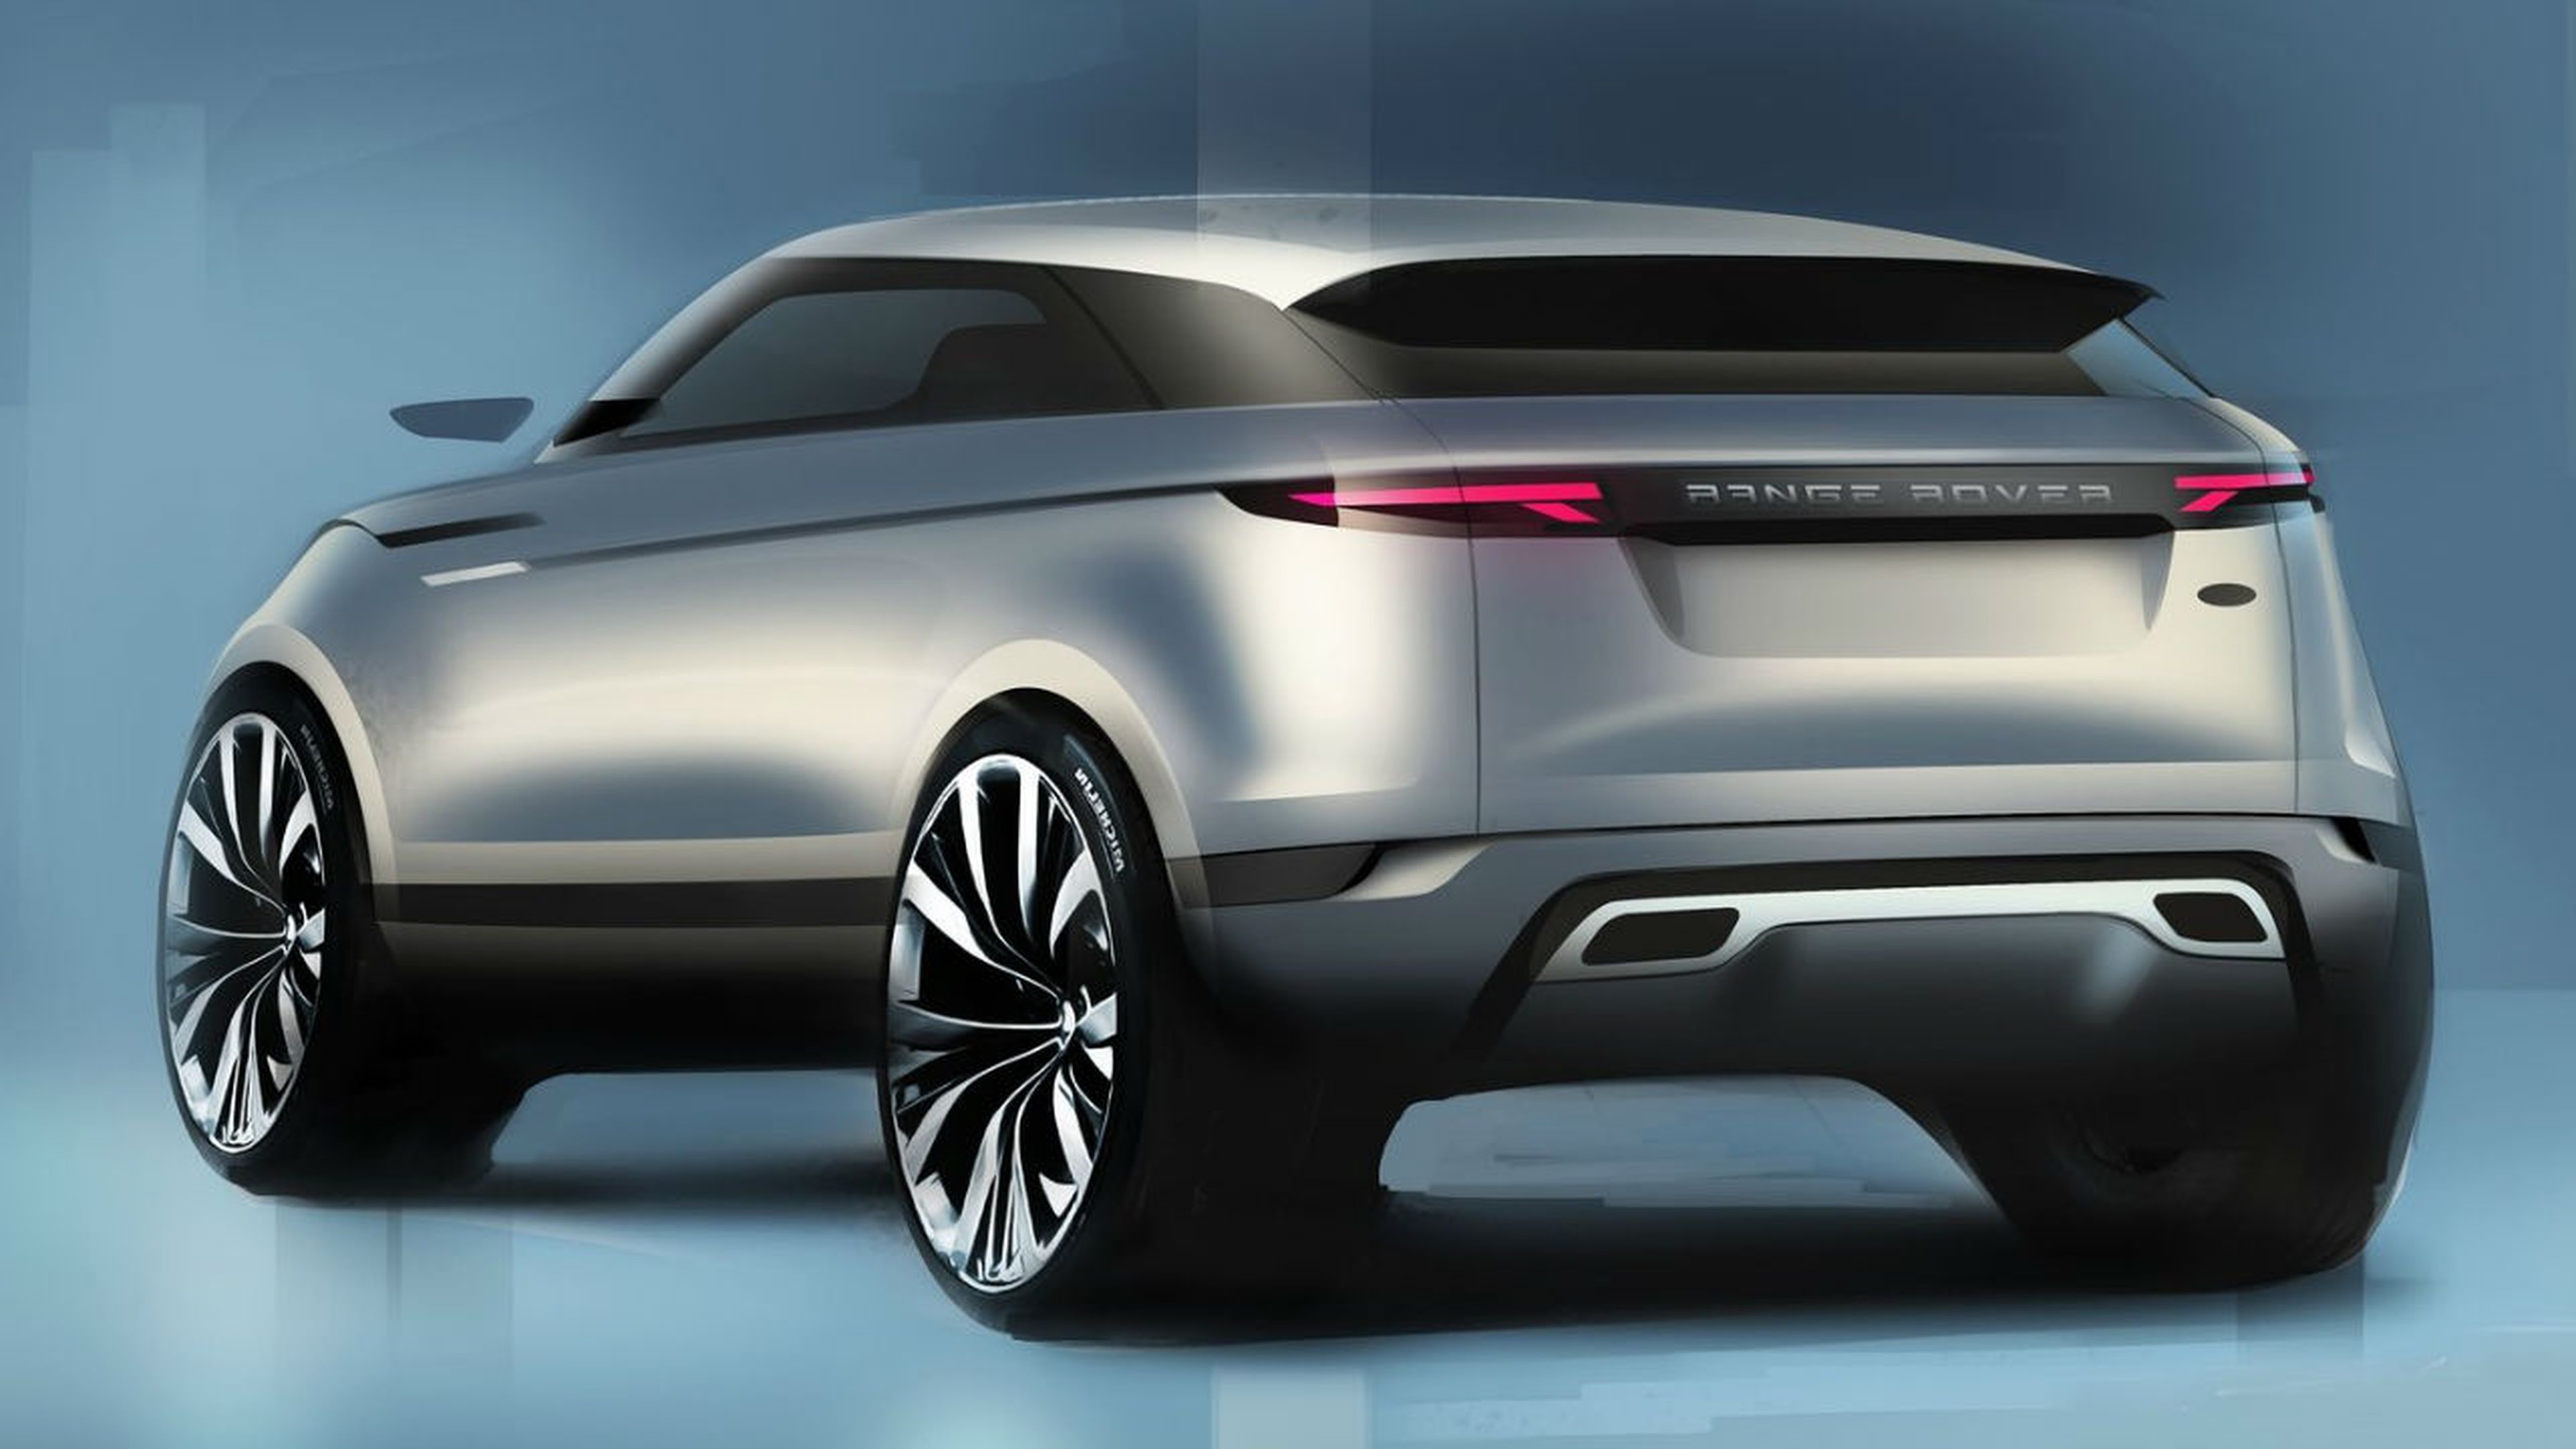 El futuro Range Rover eléctrico llegará en 2021.